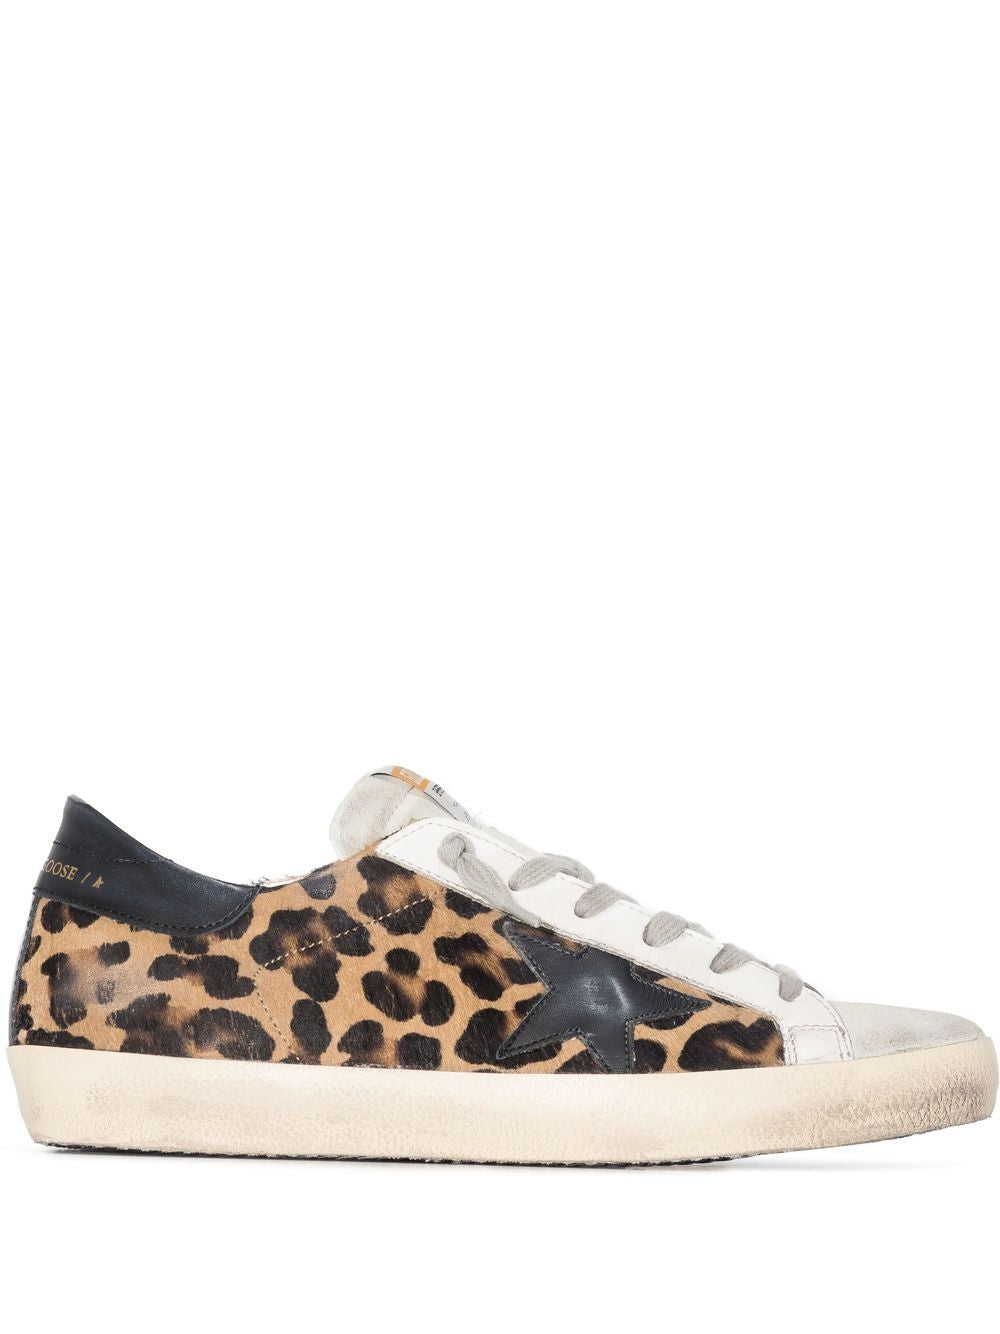 GOLDEN GOOSE Leopard Print Sneakers for Women